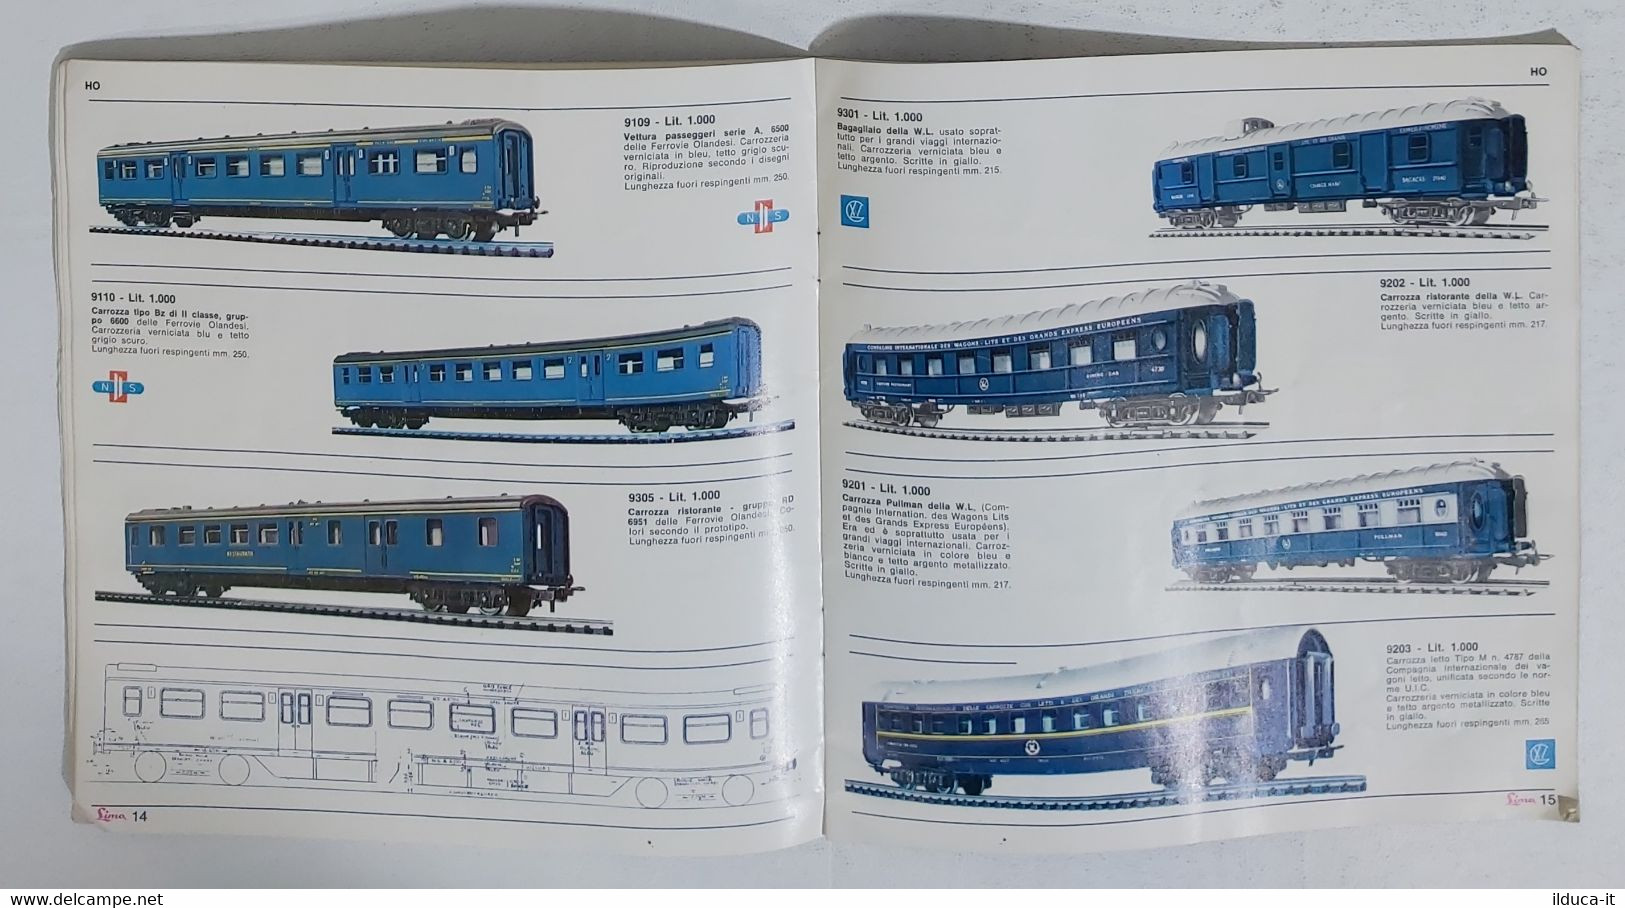 01921 Catalogo Modellismo Ferroviario Lima - X Edizione 1966-67 - Italien